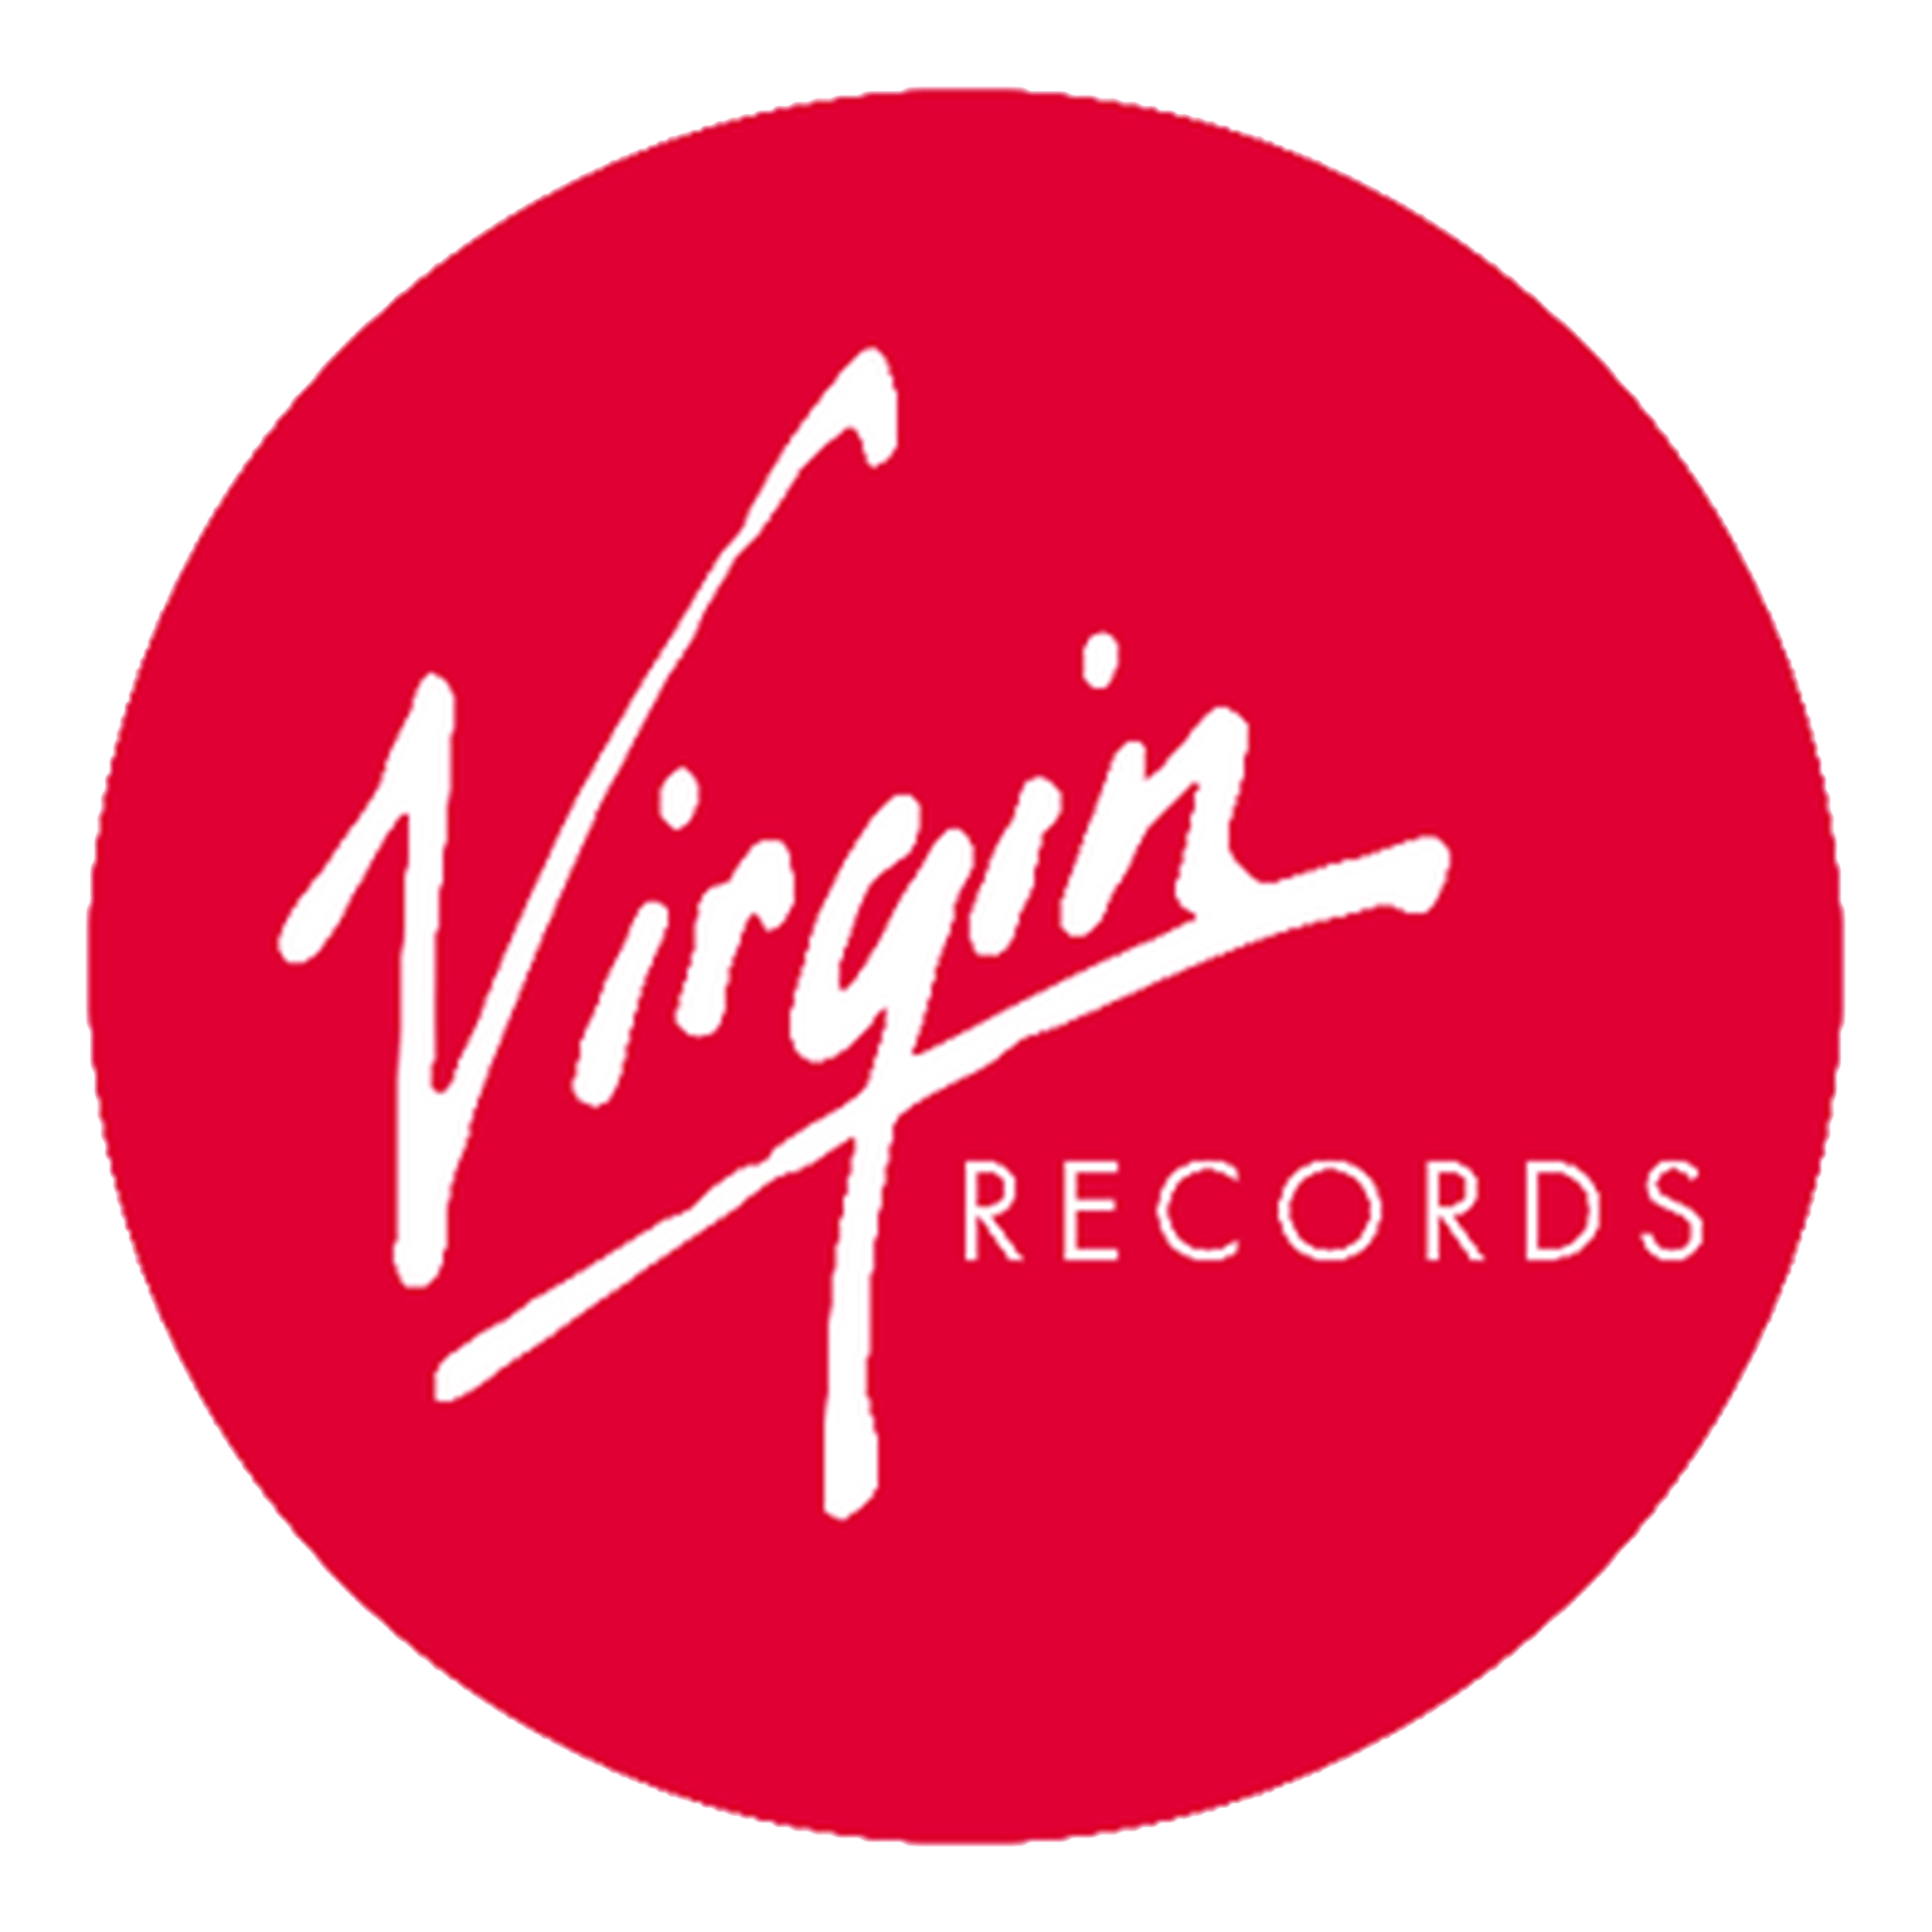 Логотип Virgin. Virgin records лейбл. Звукозаписывающие лейблы. Эмблемы музыкальных лейблов. Virgin interactive